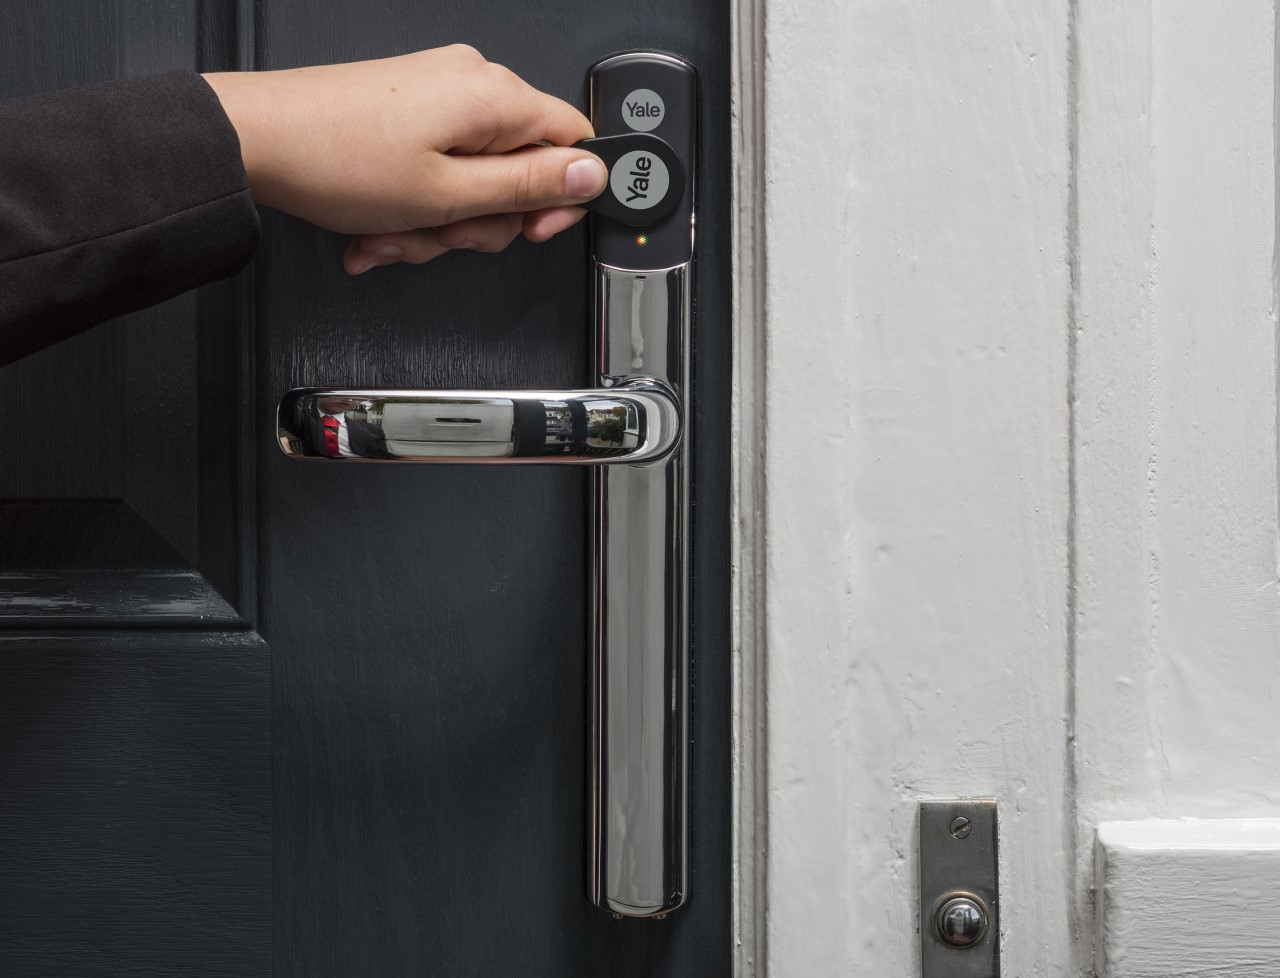 How To Open A Yale Door Lock